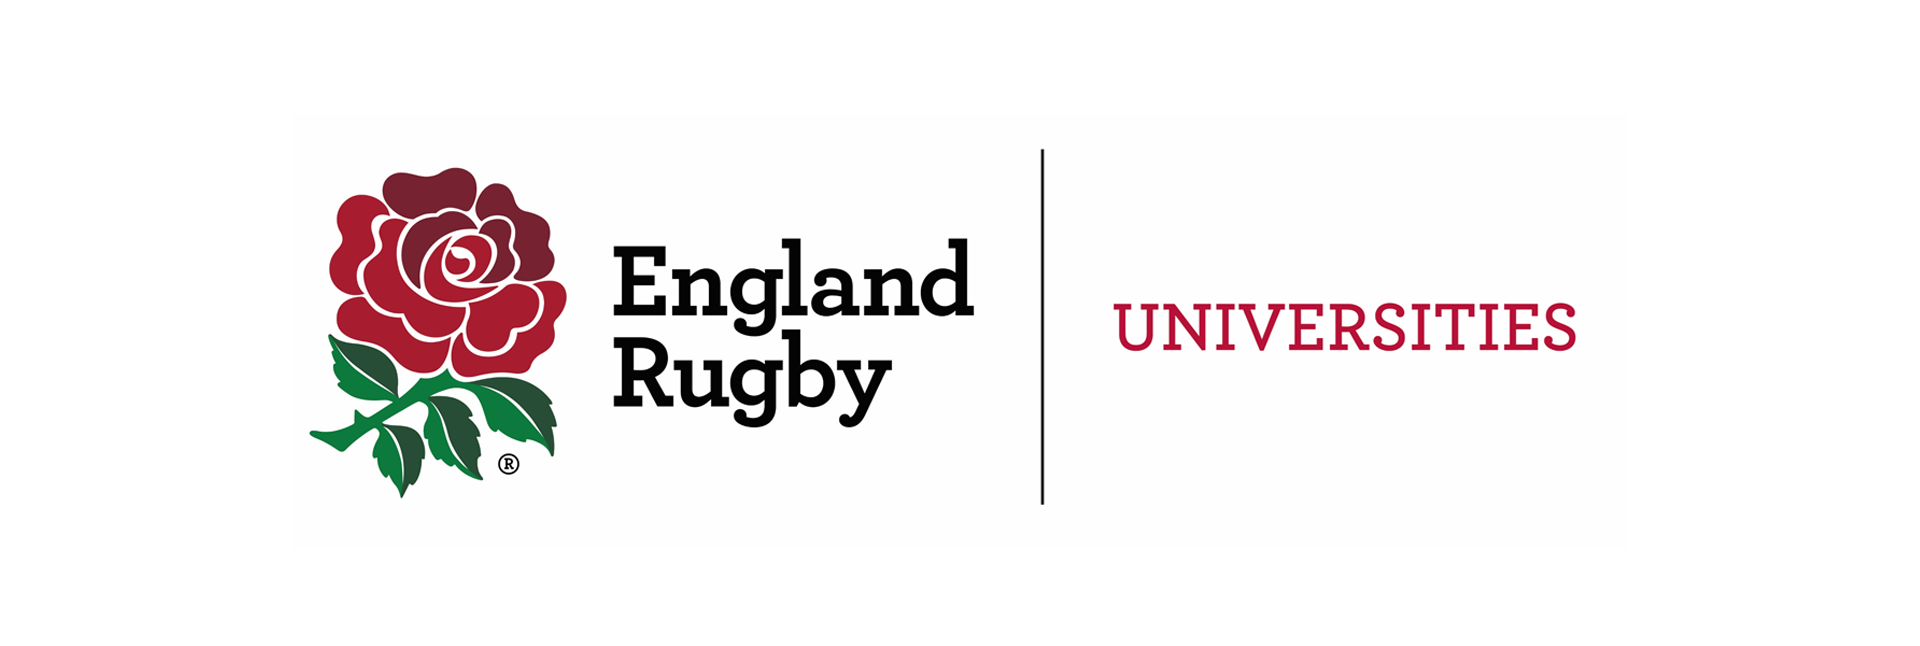 England RFU University Partner